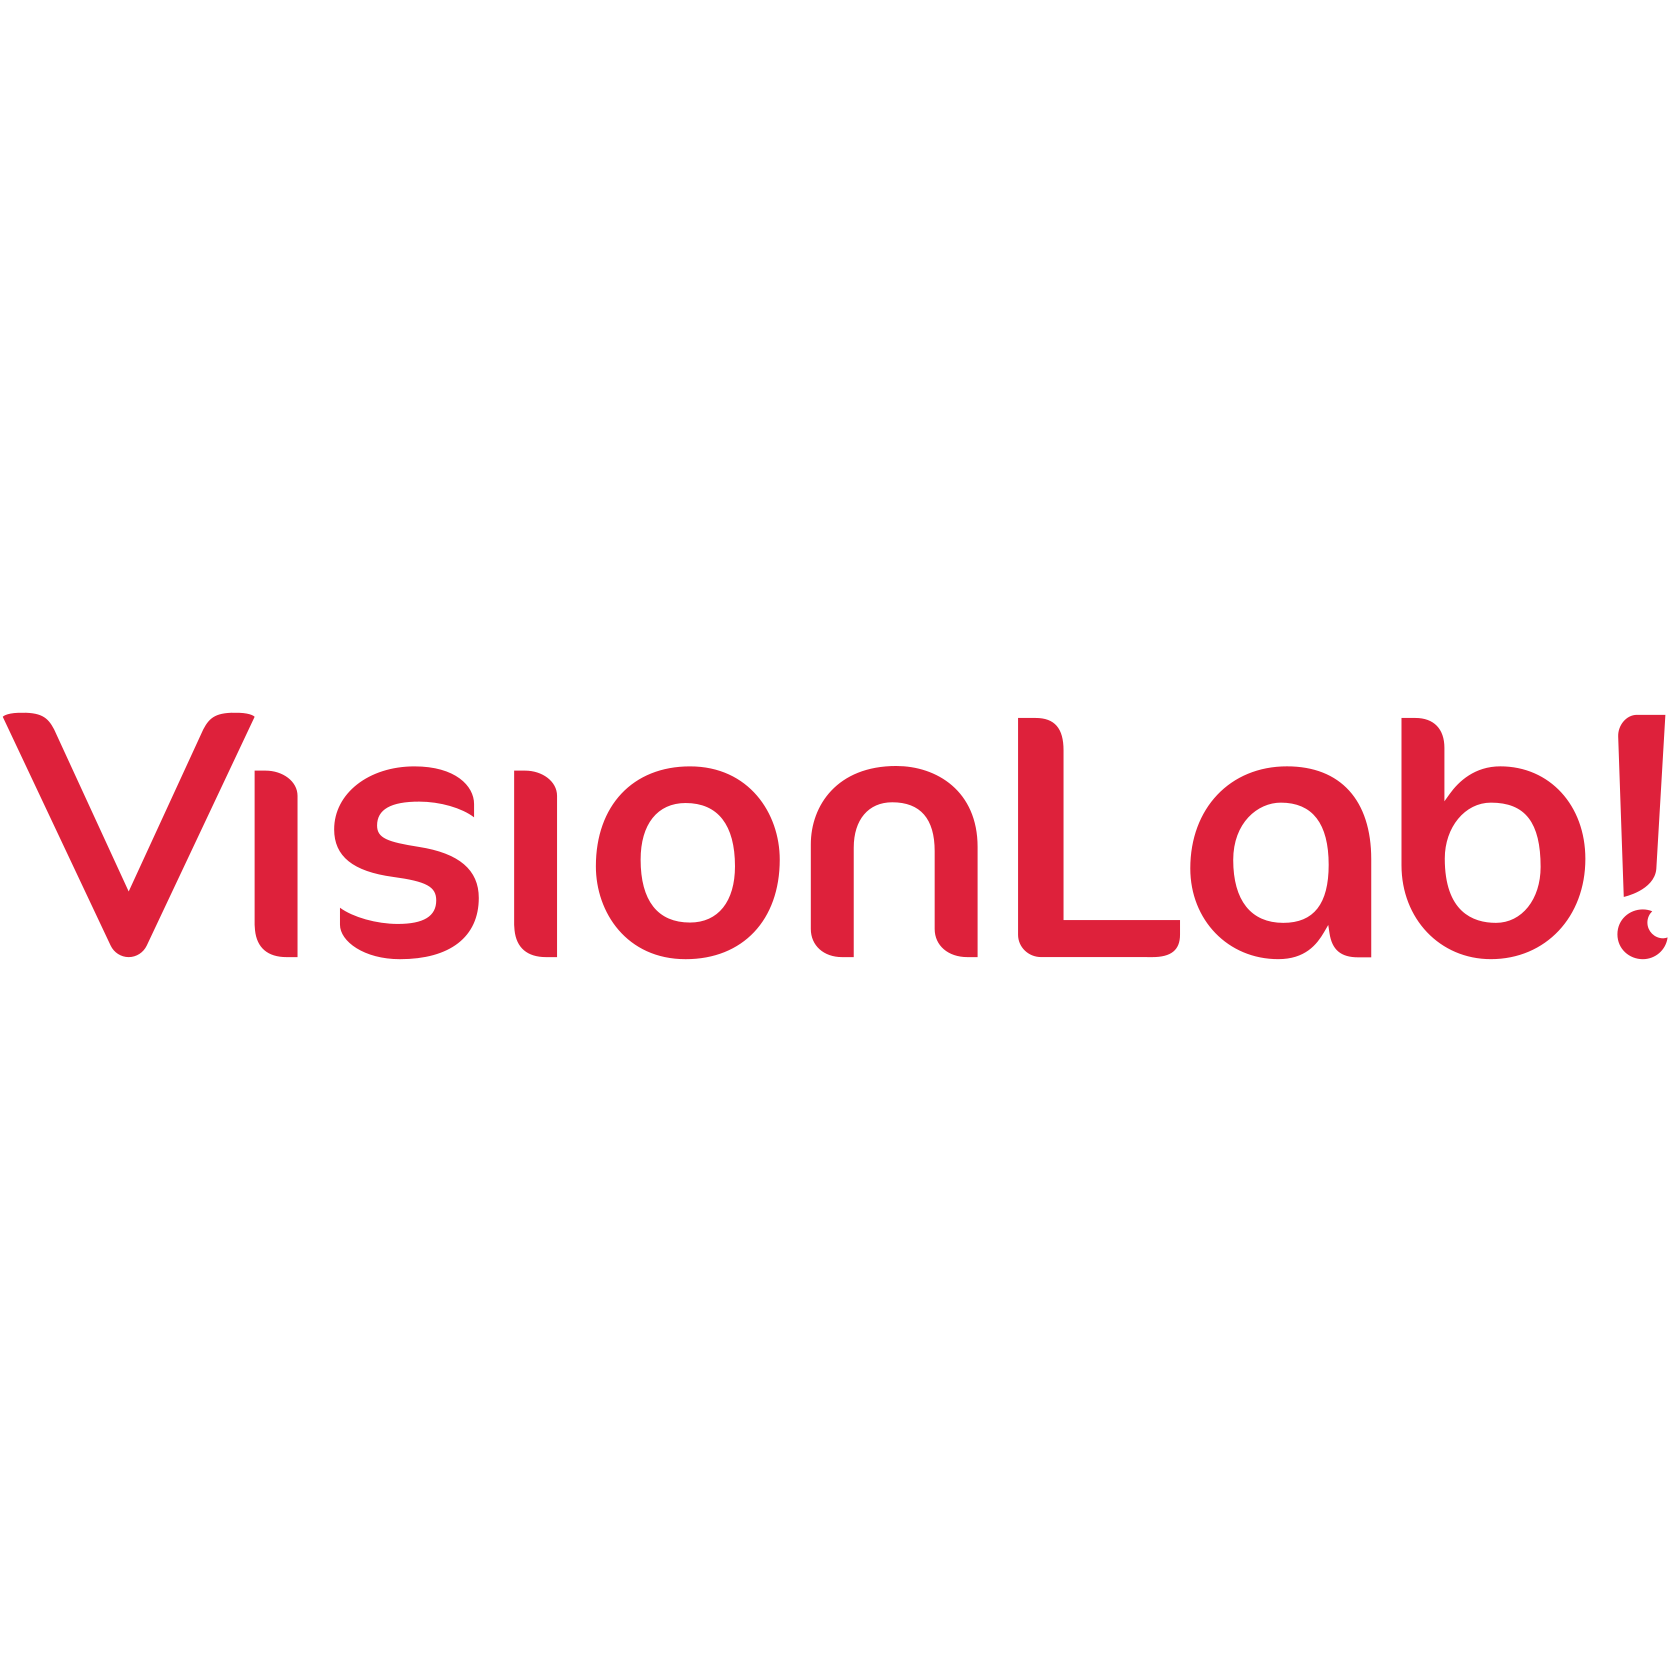 VisionLab! Coupons & Promo Codes